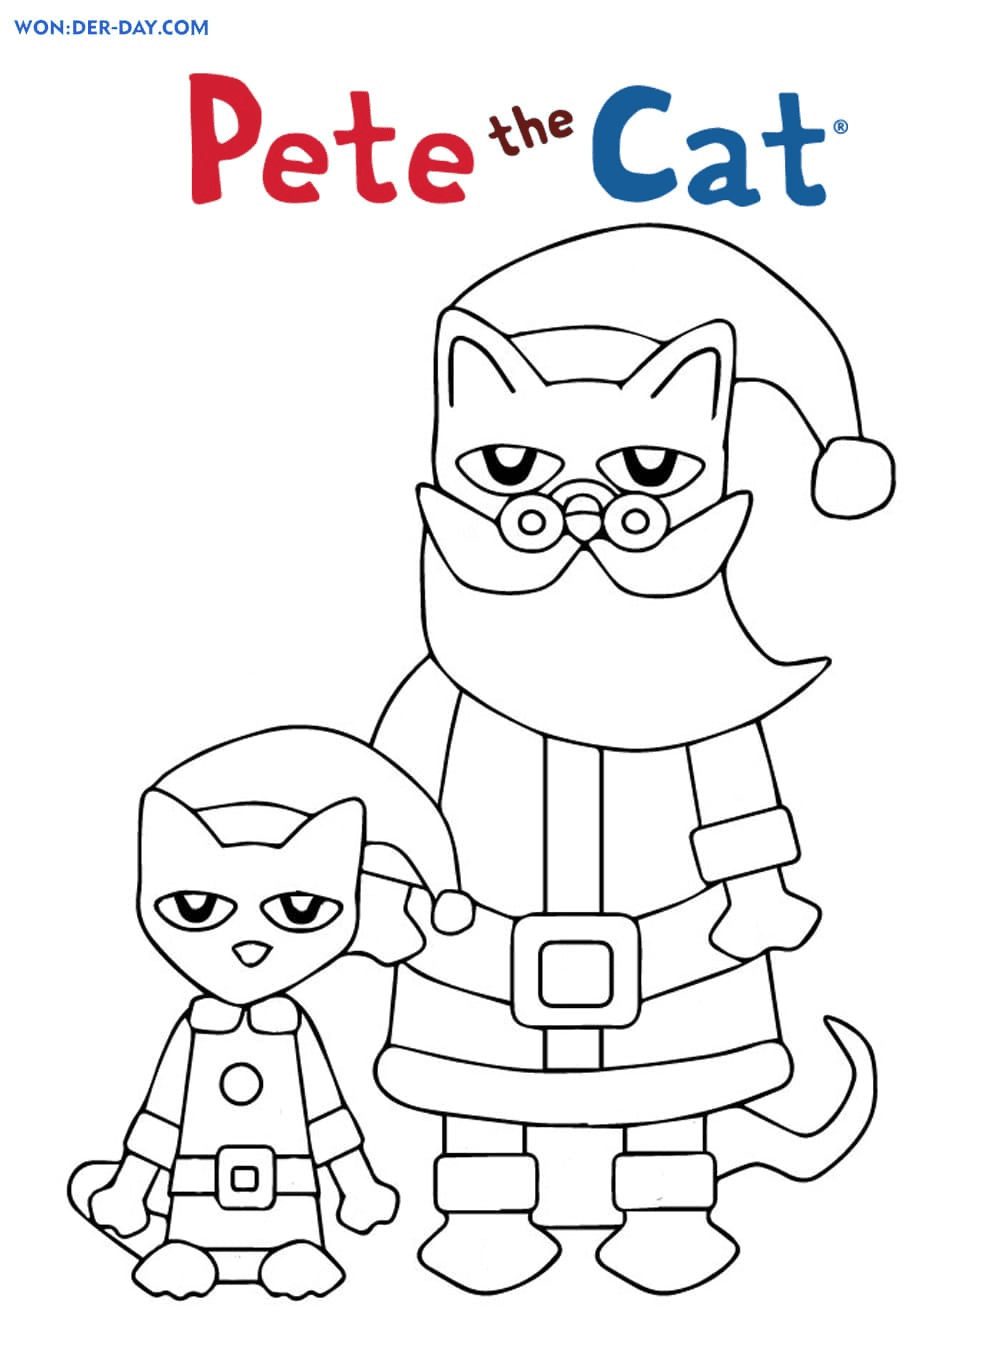 《皮特猫》中的皮特猫和圣诞老人